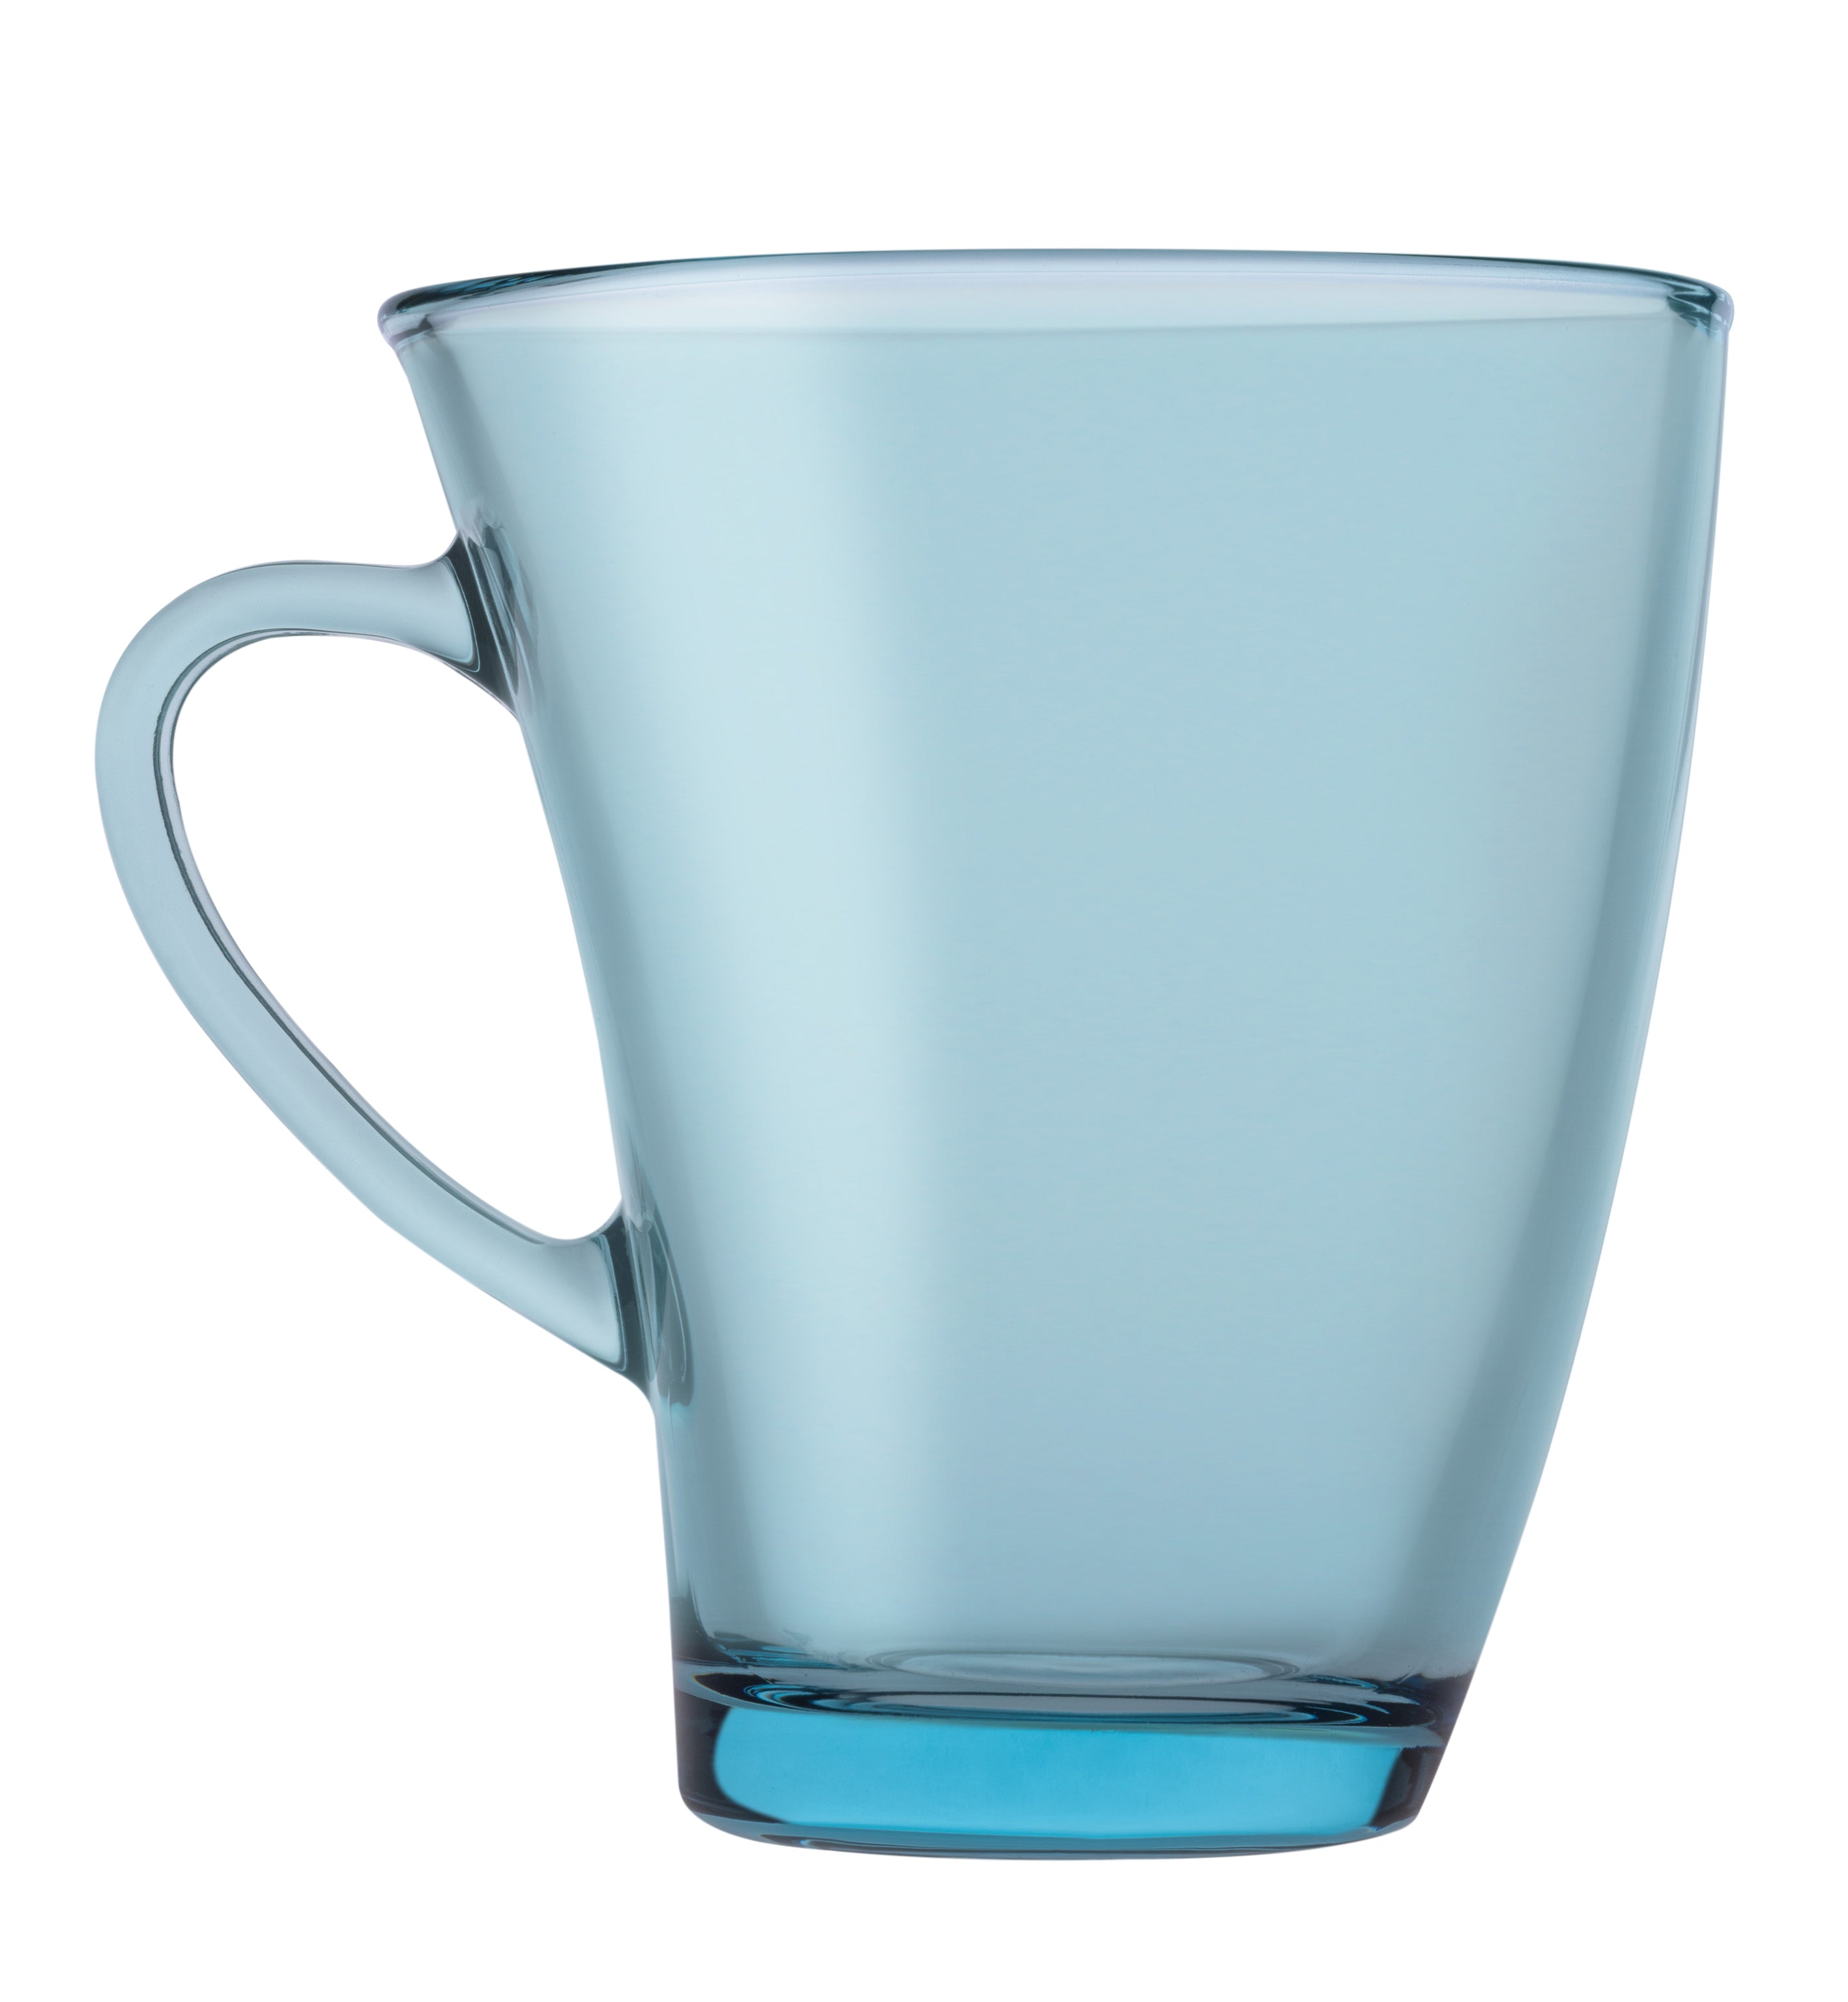 Pasabahce Penguen Mug - Turquoise, 300ml